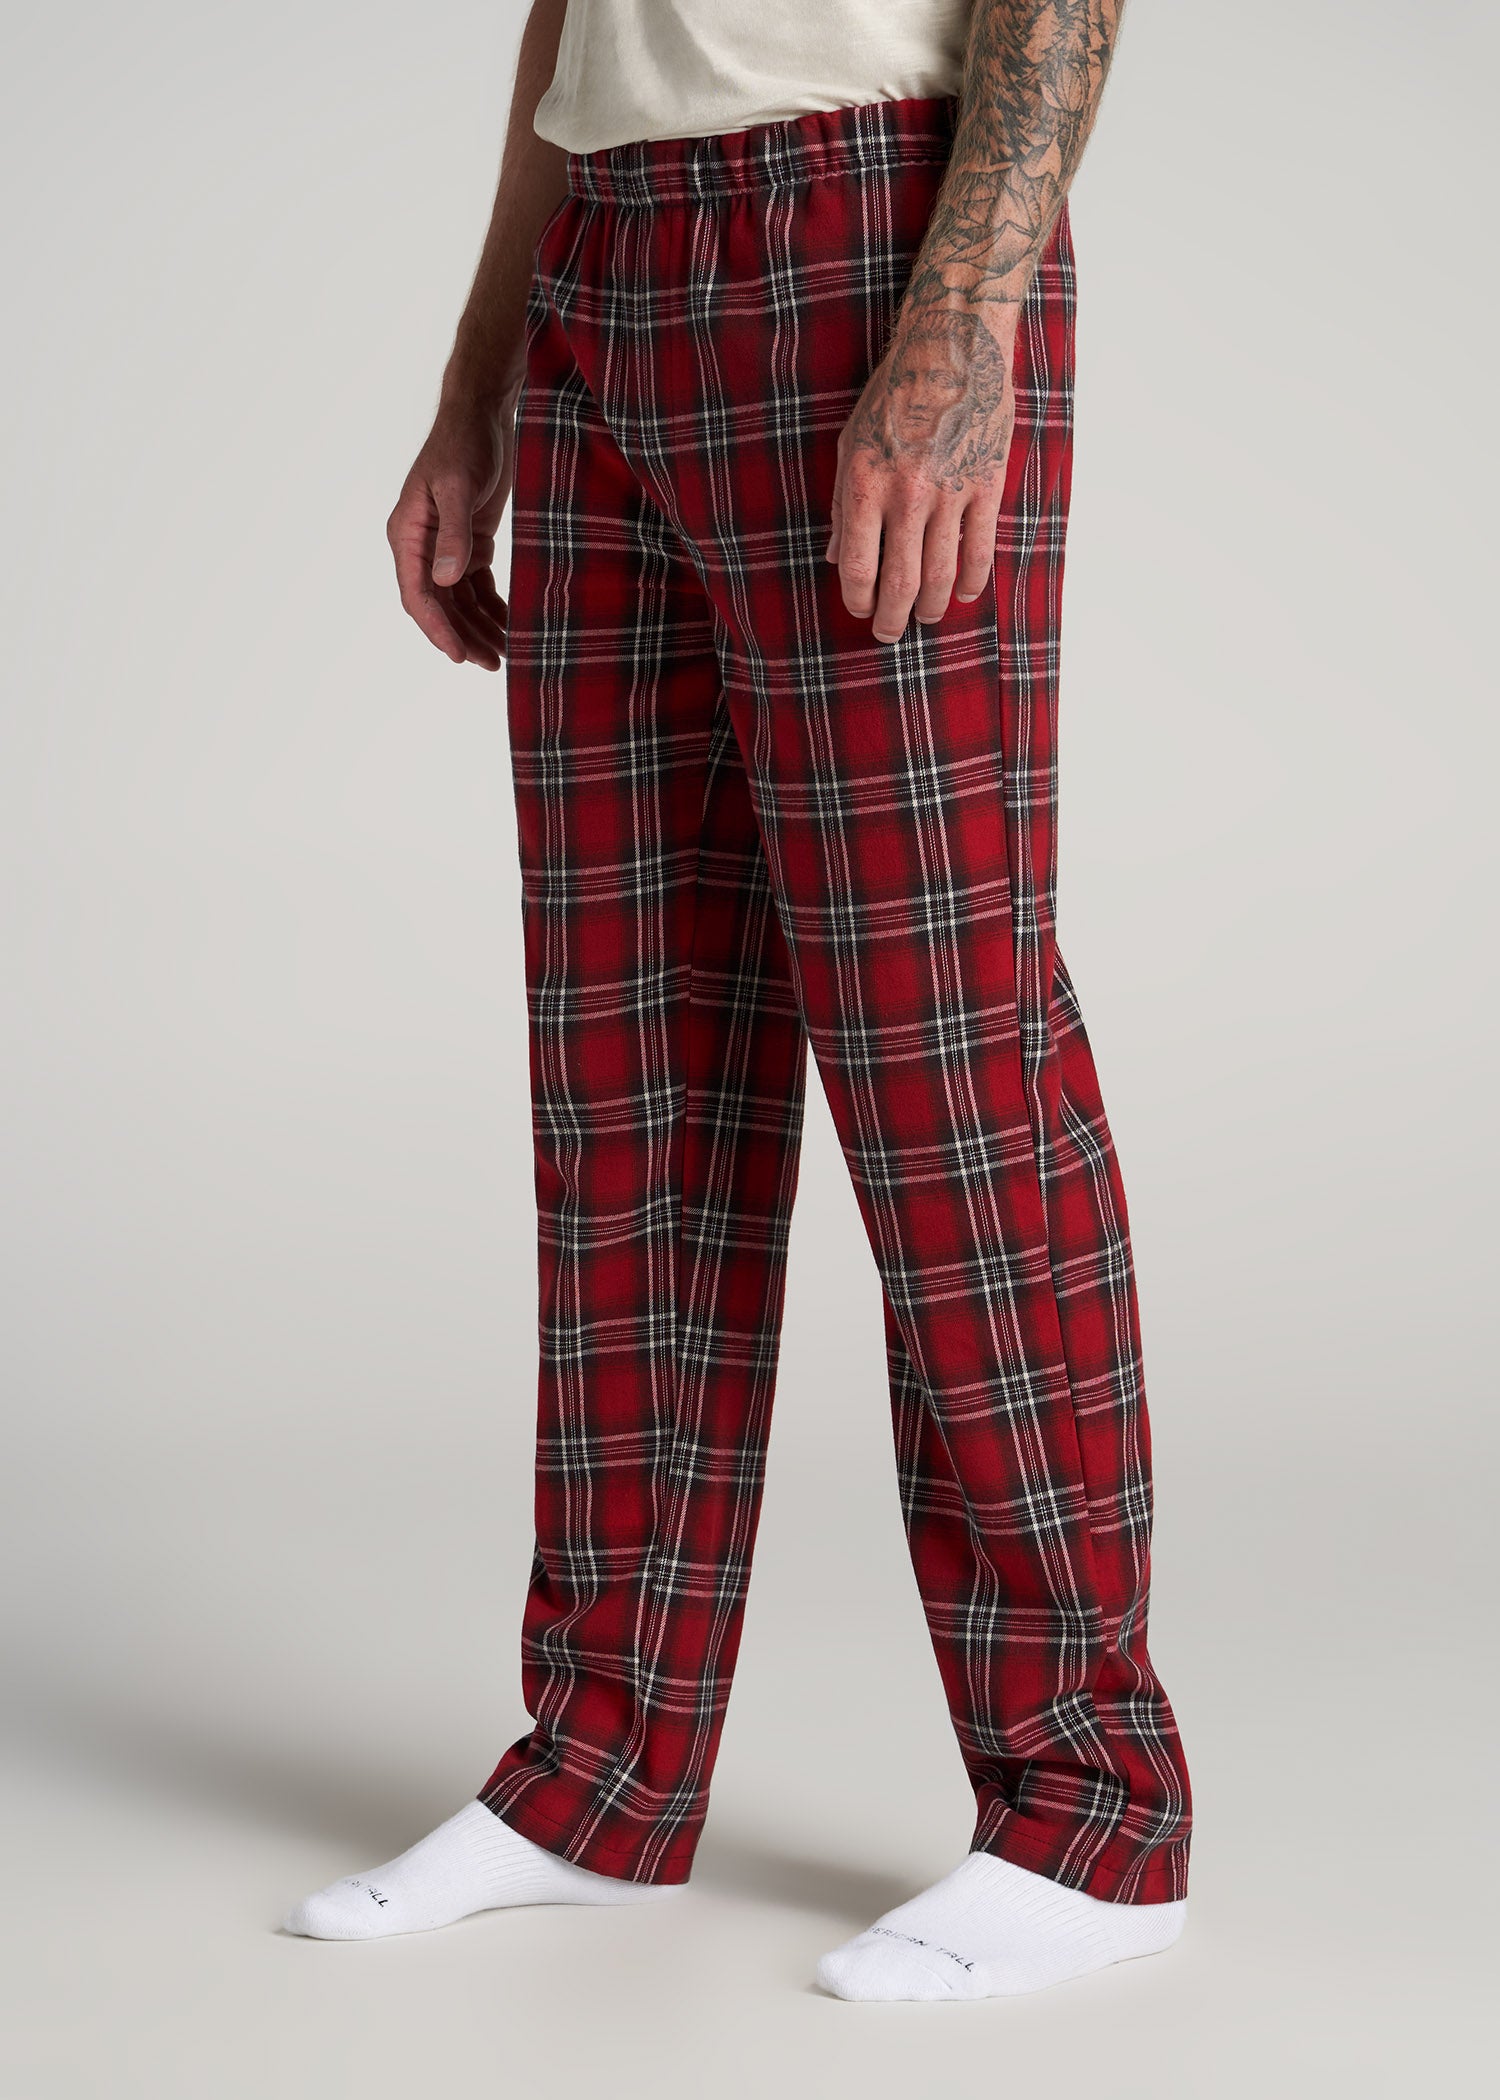 Sleepwear for Women - Pyjama Bottoms | Ardene